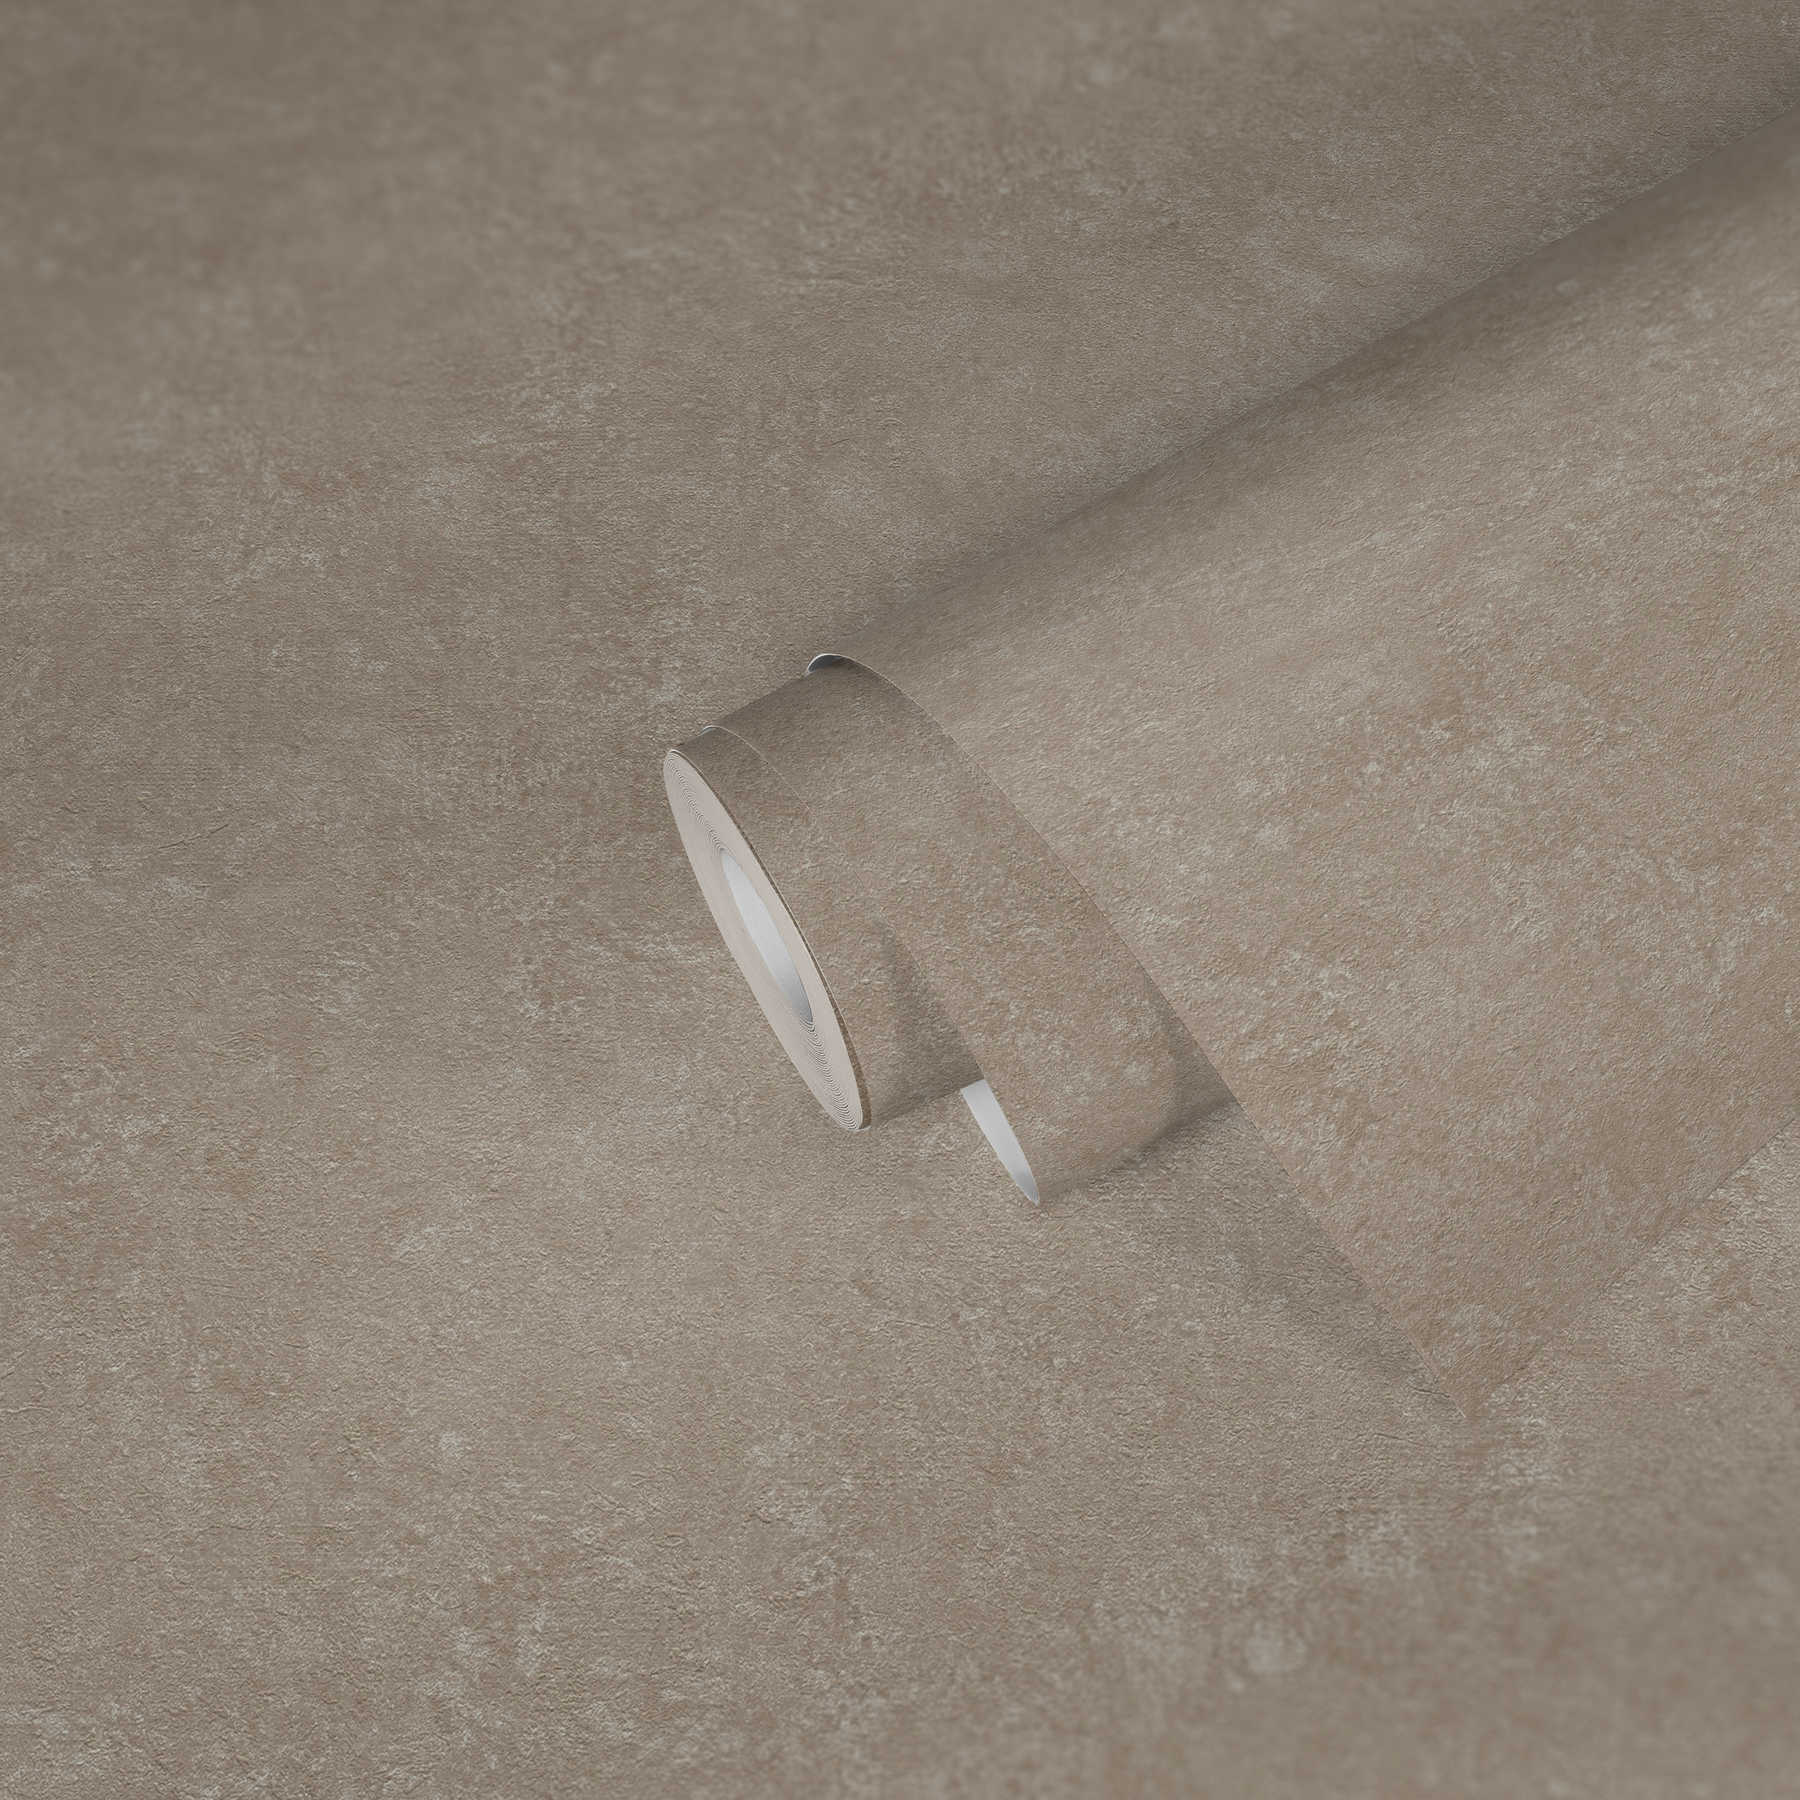             papier peint aspect rugueux crépi style industriel - beige, blanc
        